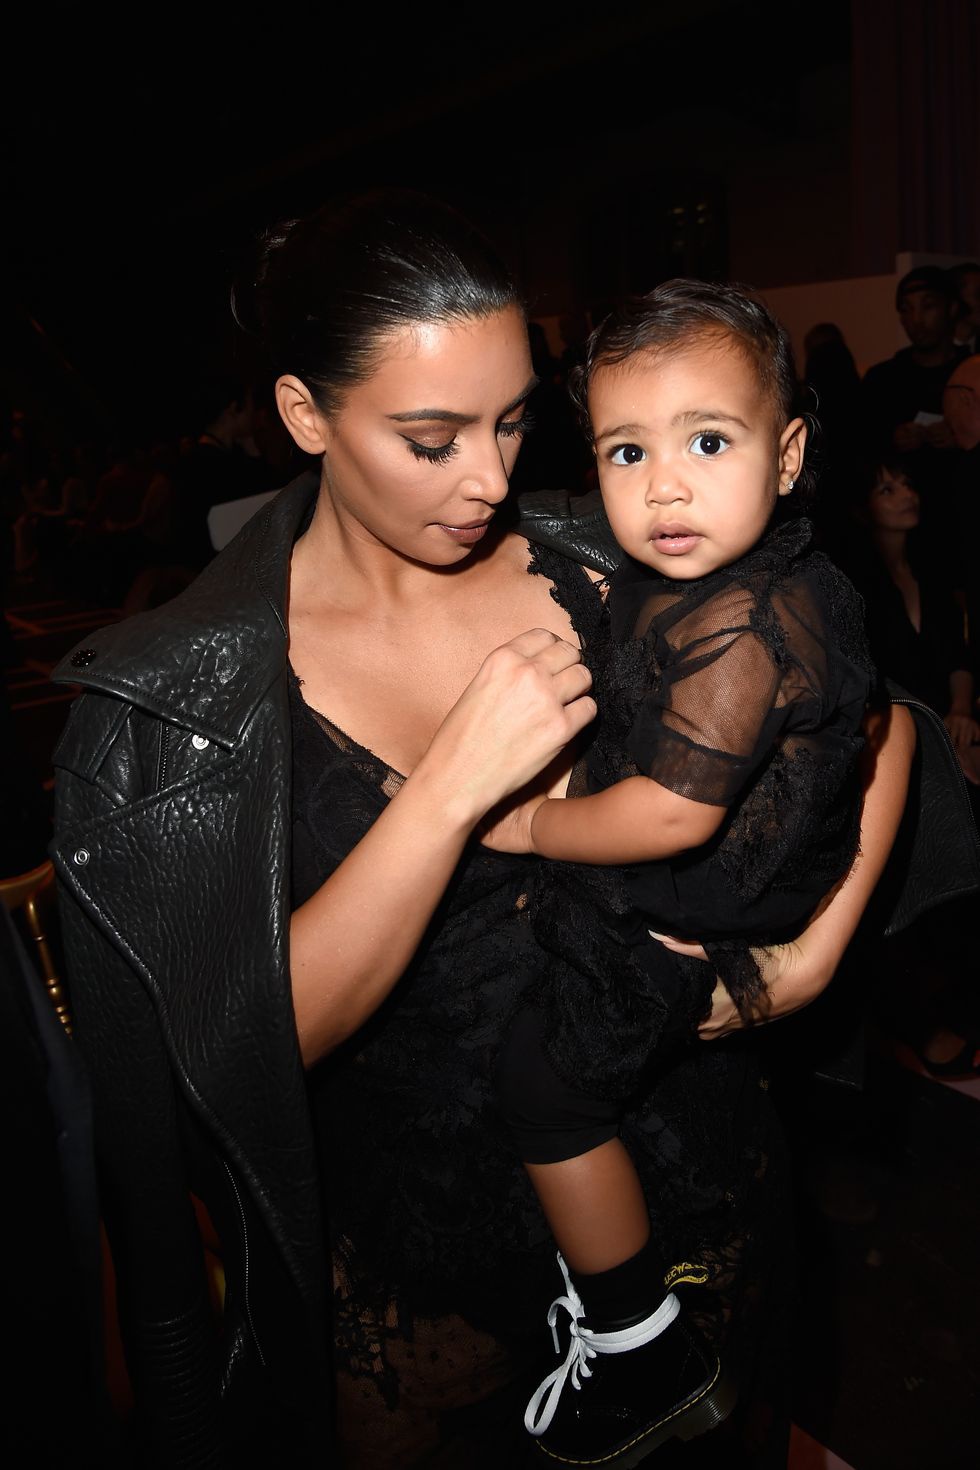 Tháng 9/2014, North West sang chảnh không kém gì mẹ Kim khi khoác lên mình chiếc váy độc quyền được thiết kế bởi Riccardo Tisci (cựu giám đốc sáng tạo Givenchy) và là bạn thân của Kim Kardashian. 